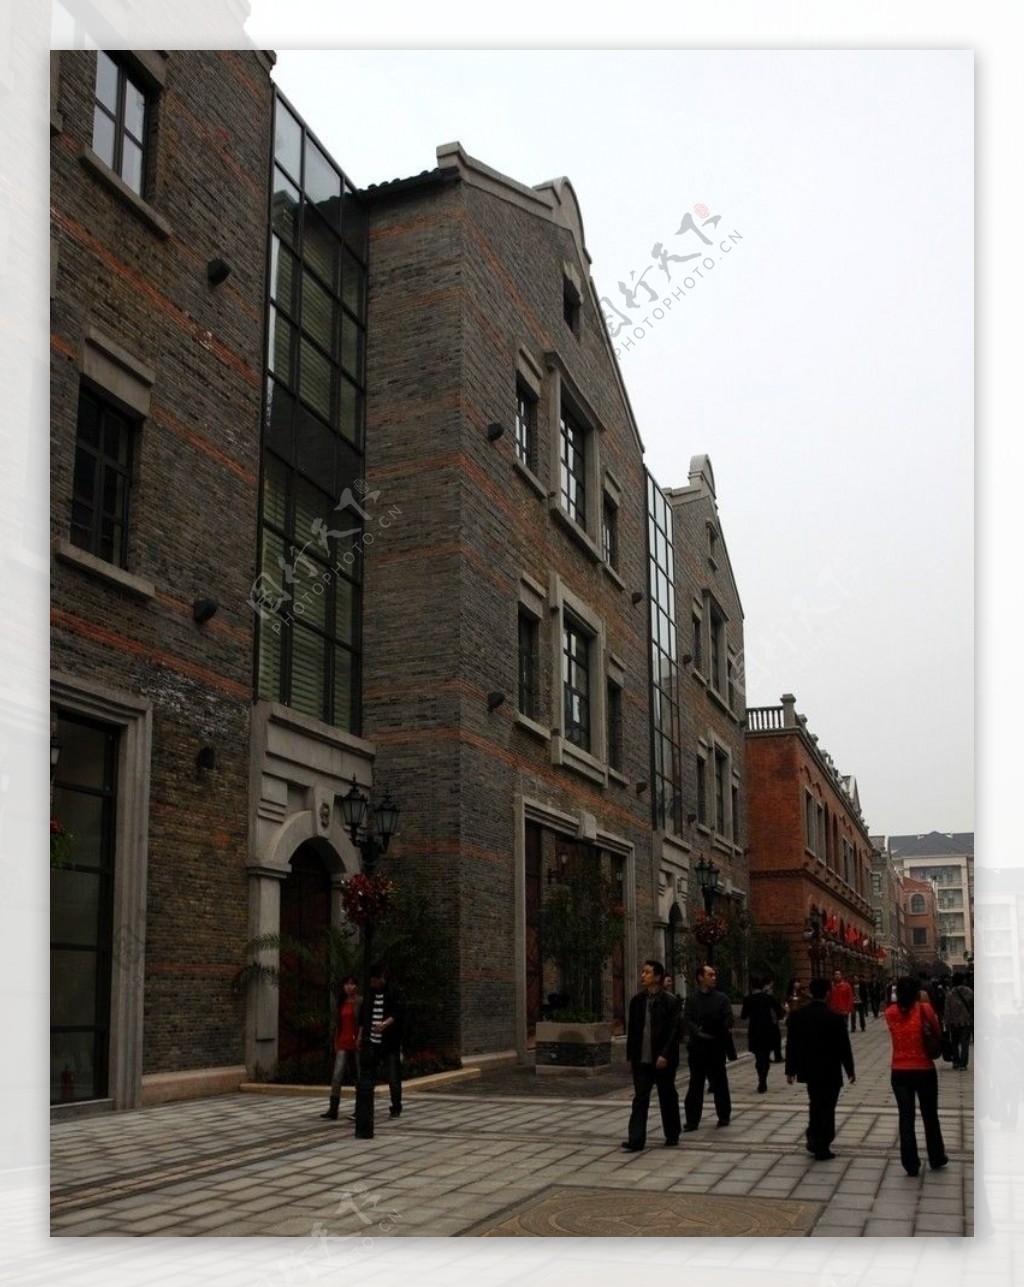 汉街建筑图片